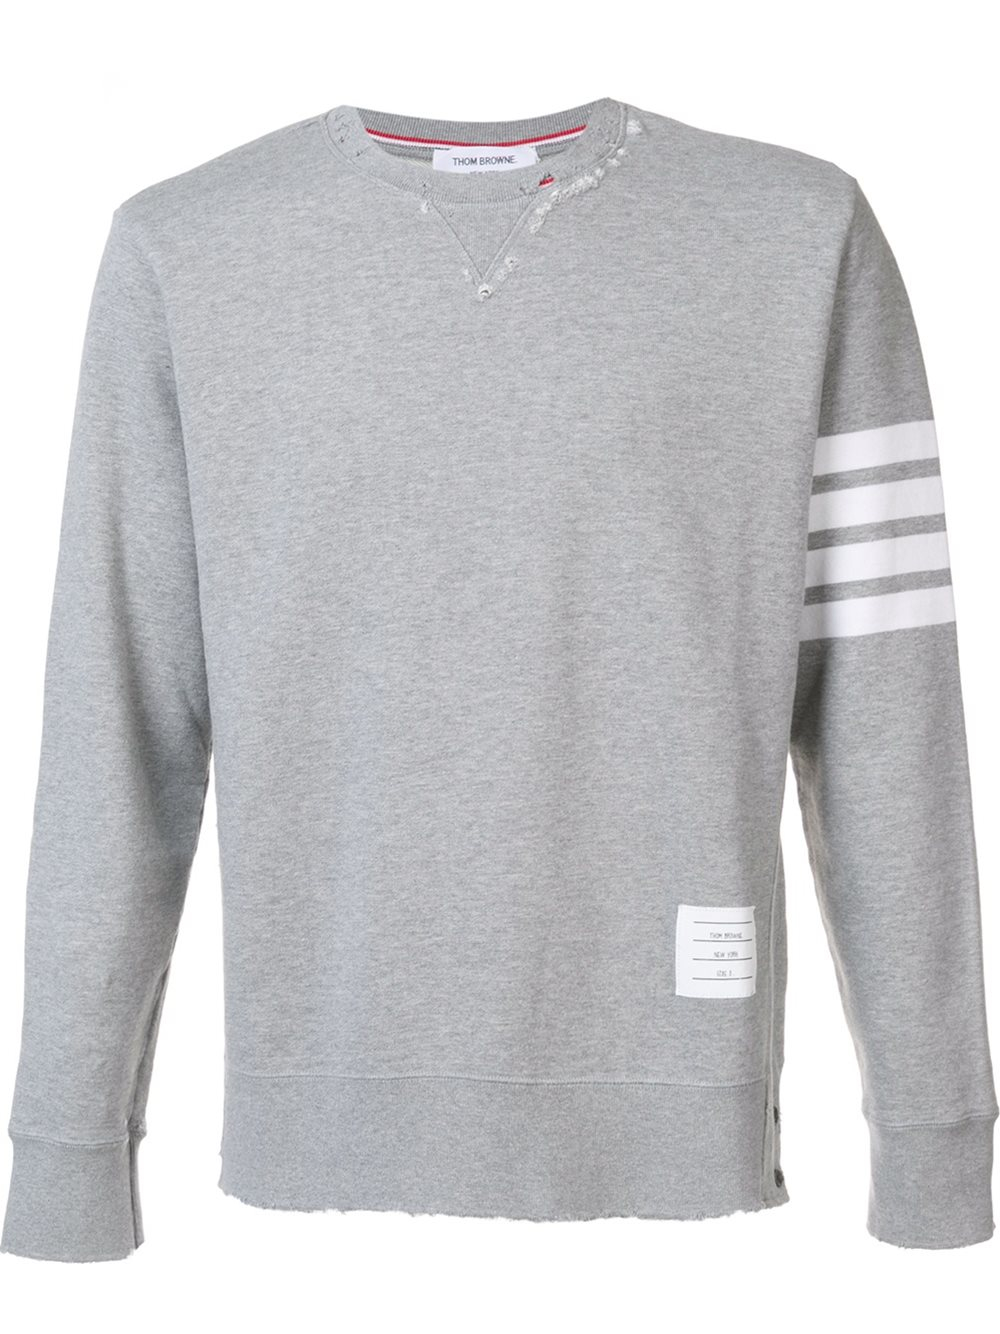 Lyst - Thom browne Sleeve Stripe Sweatshirt in Gray for Men